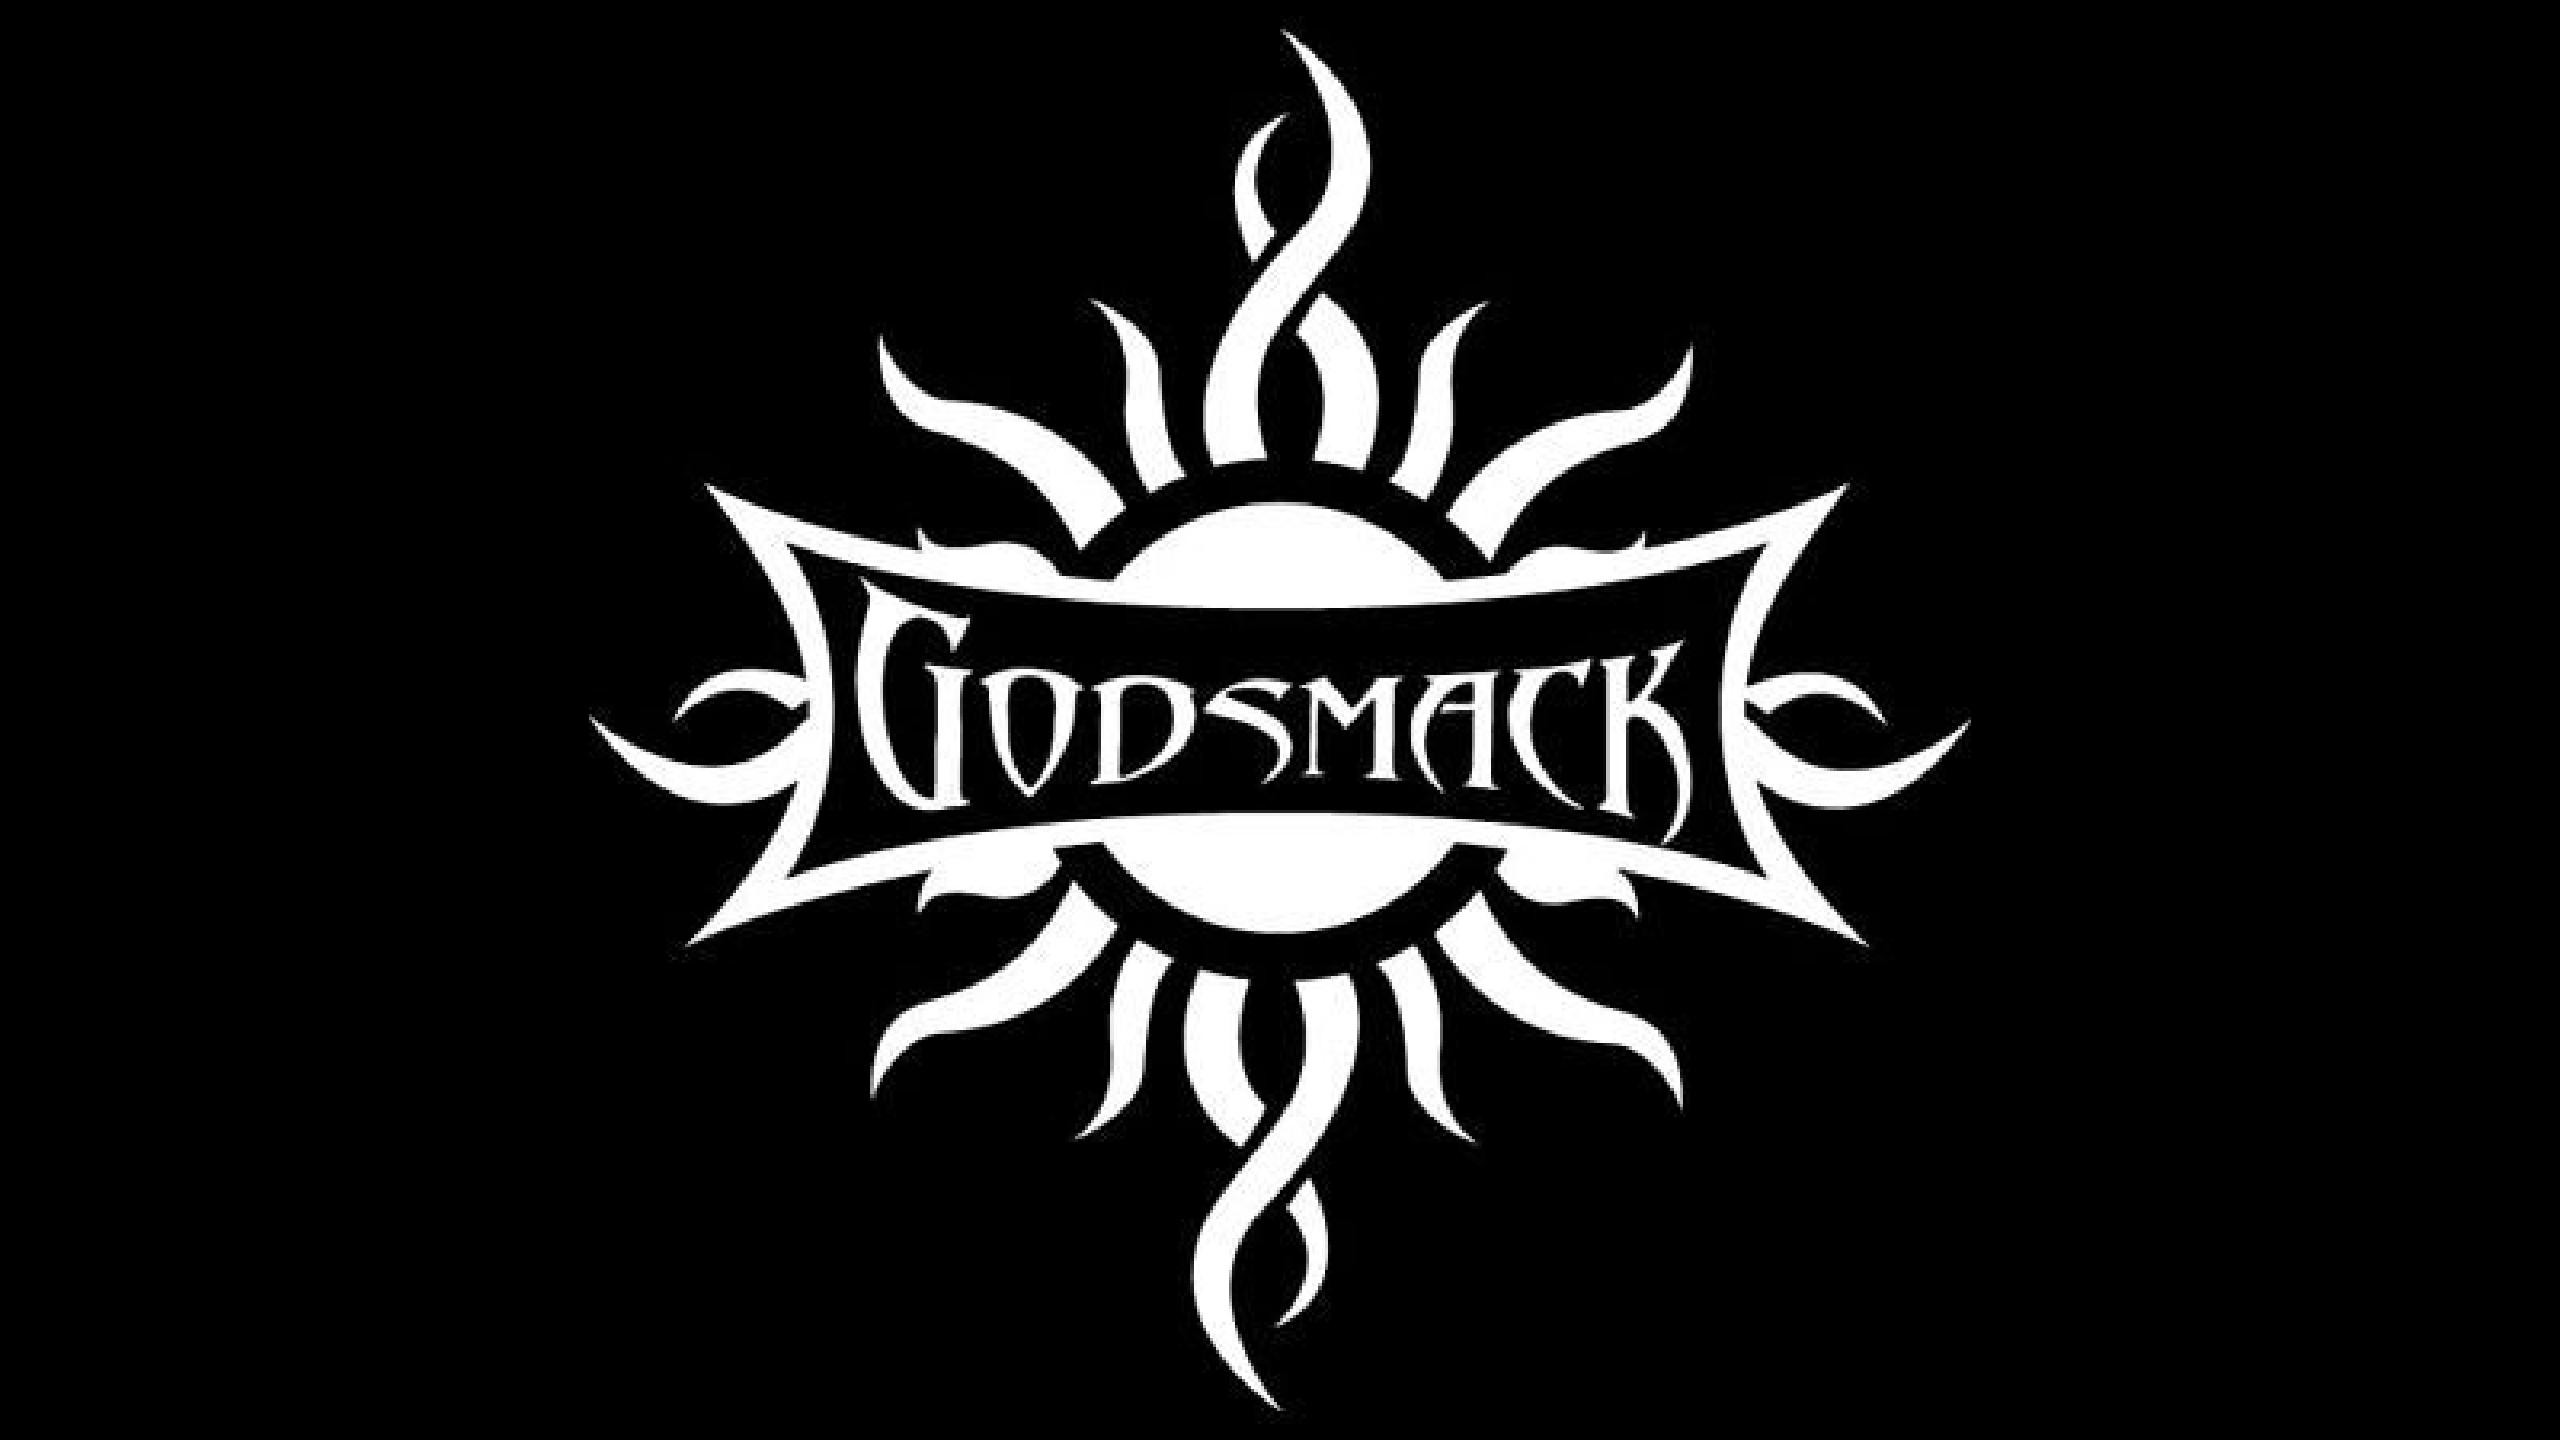 2560x1440 Godsmack Tickets fÃ¼r 2017 2018 Tour. Information Ã¼ber Konzerte, Tour und  Karten von Godsmack in 2017 2018 | Wegow